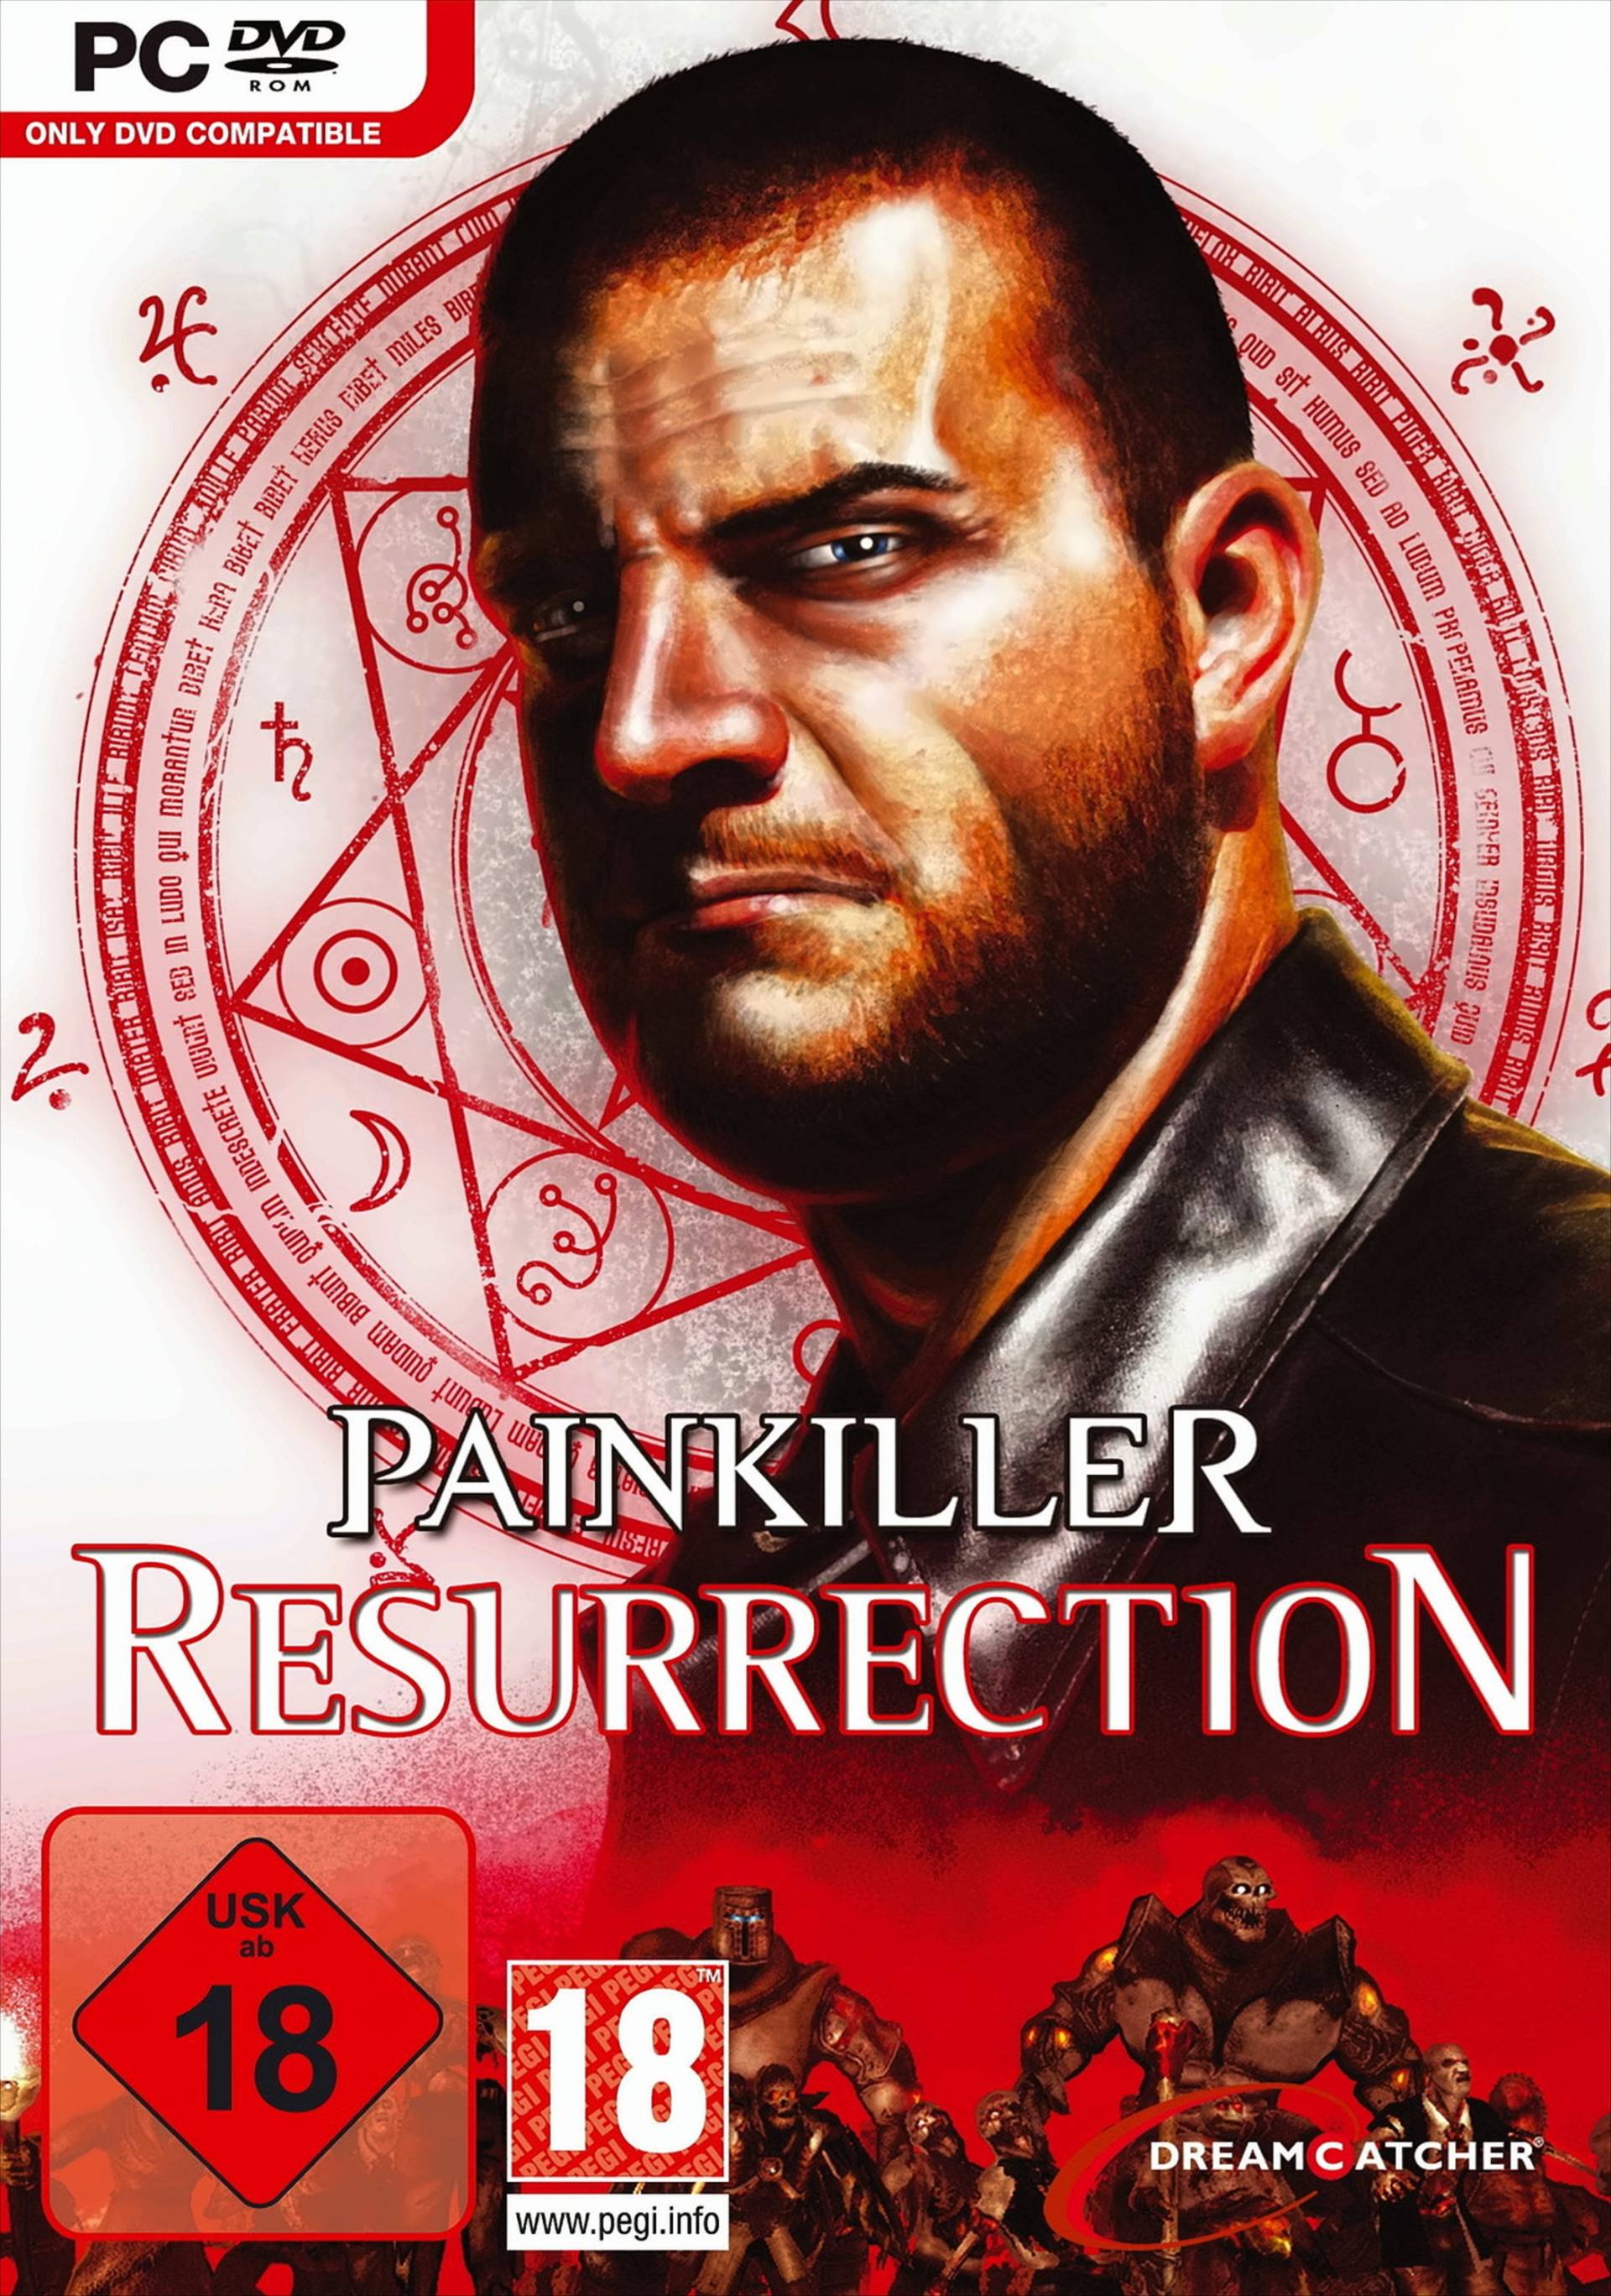 Painkiller: Resurrection (dt.) von Eurovideo Bildprogramm Gmbh